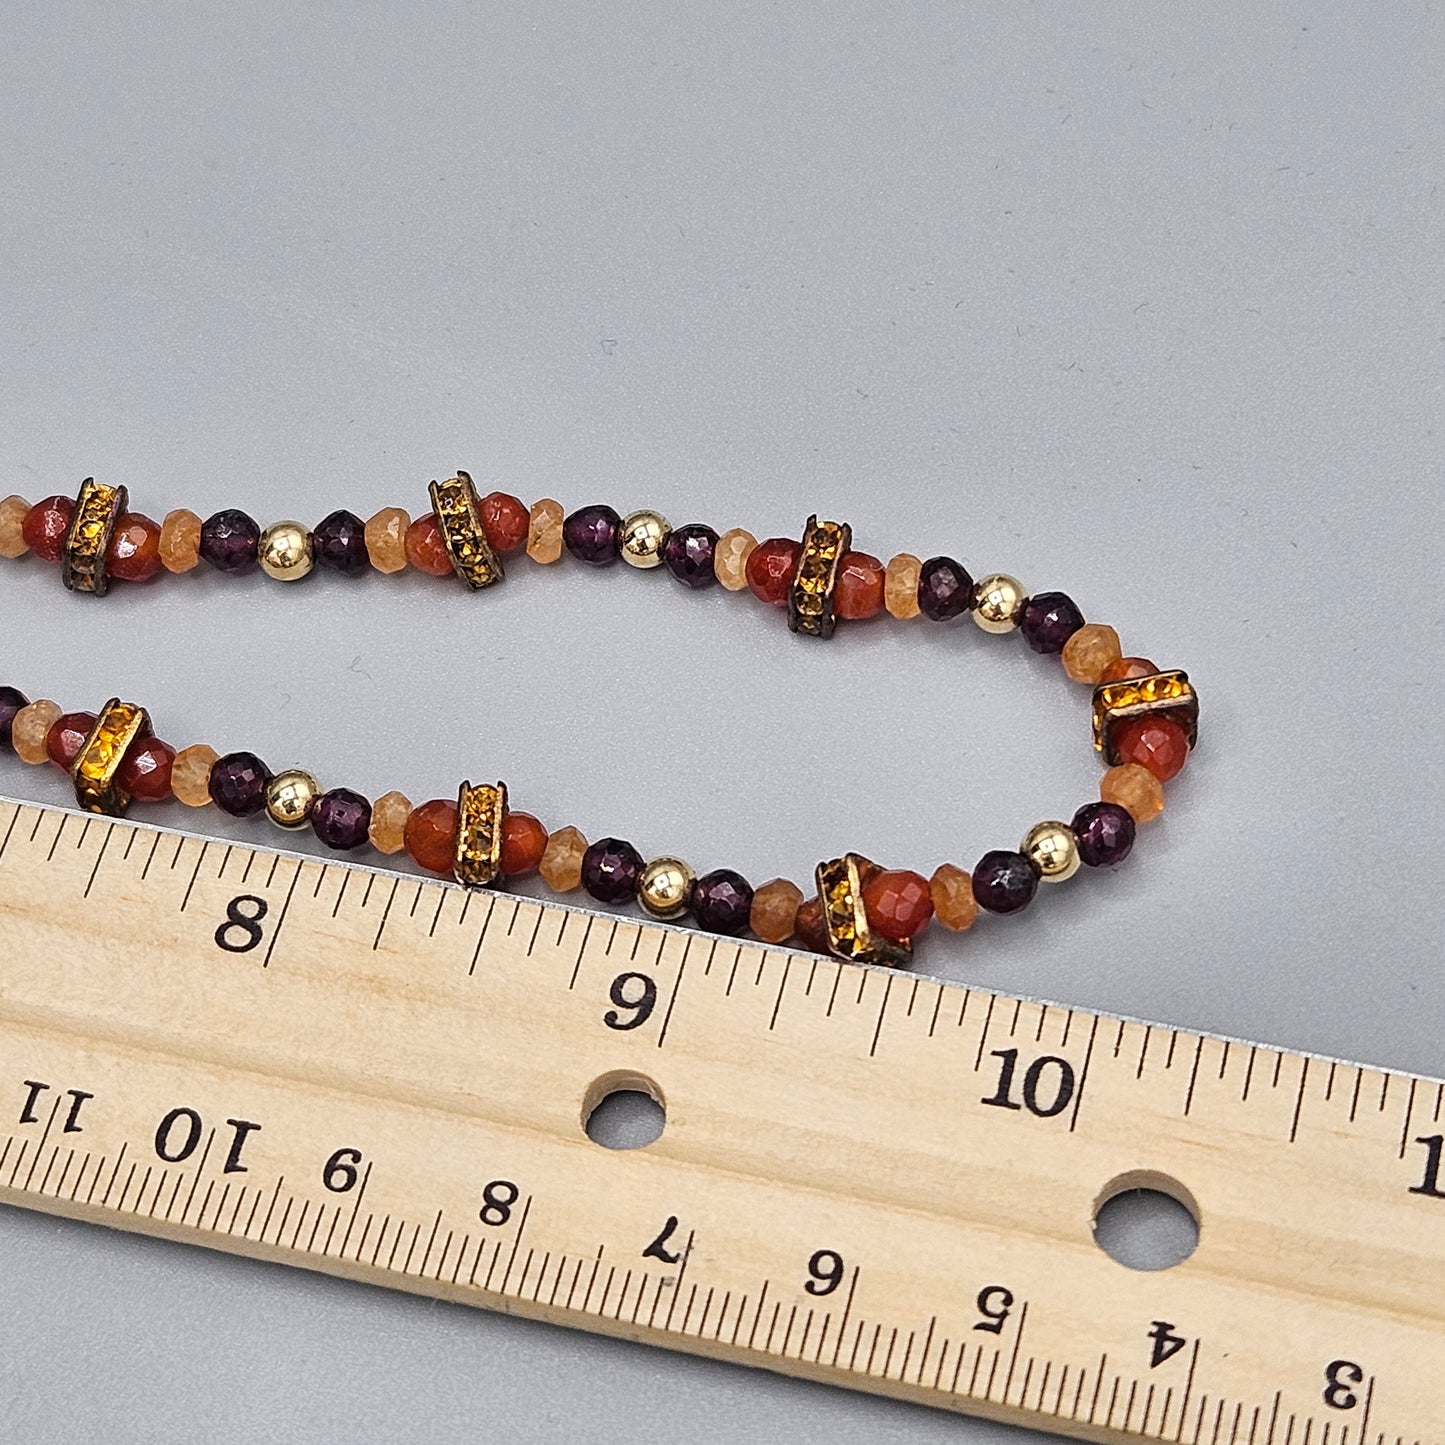 Mixed Bead & Material Shiny Strand Necklace